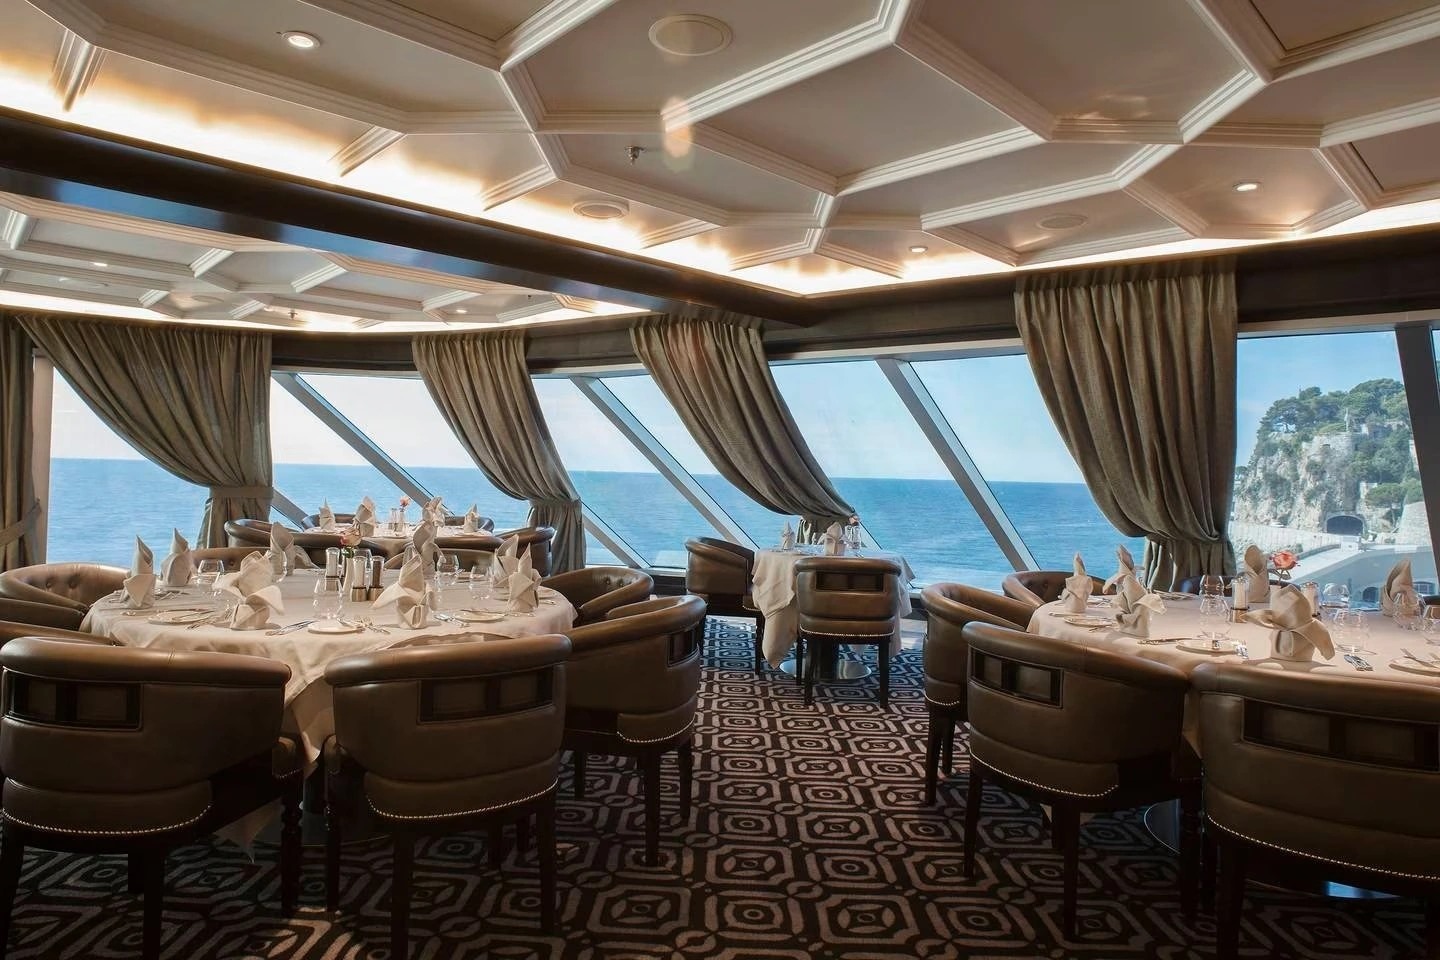 Hai nhà hàng đầu tiên xuất hiện trên du thuyền là Chartreuse và Pacific Rim, mang đến cho hành khách thực đơn đa dạng. Sau đó, các nhà hàng đặc trưng của hãng được lập nên gồm Prime 7, Compass Rose, La Veranda/Sette Mari, được đánh giá là đạt tiêu chuẩn cao, đáp ứng dịch vụ ăn uống trên một tàu du lịch tiêu chuẩn.